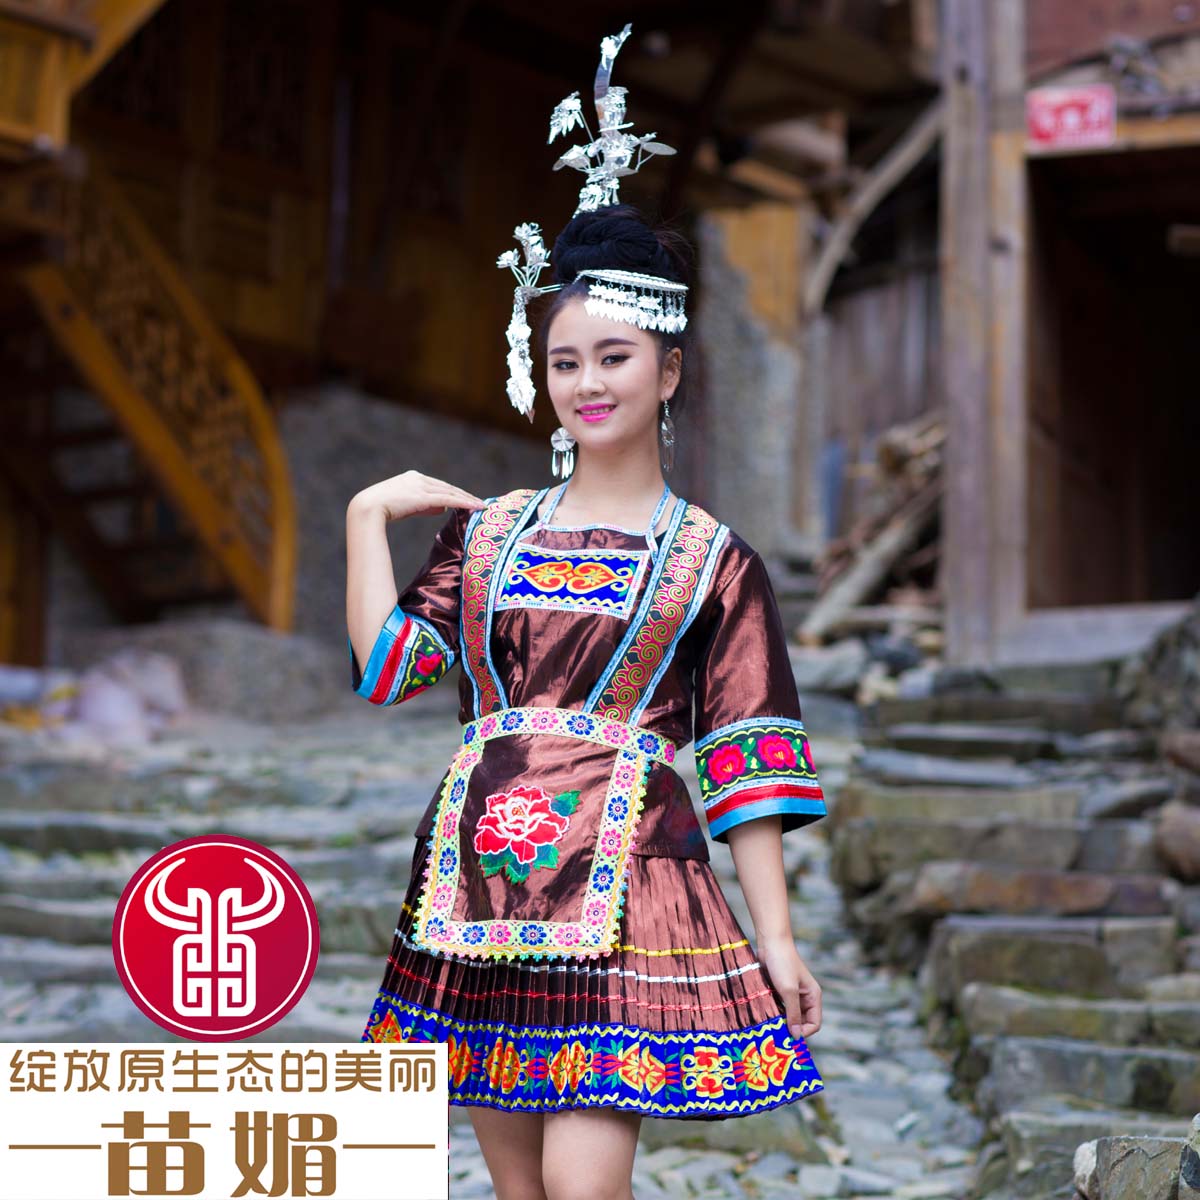 贵州有一独特的苗族村寨，女生四季穿短裙，被称为短裙苗第一村_少数民族